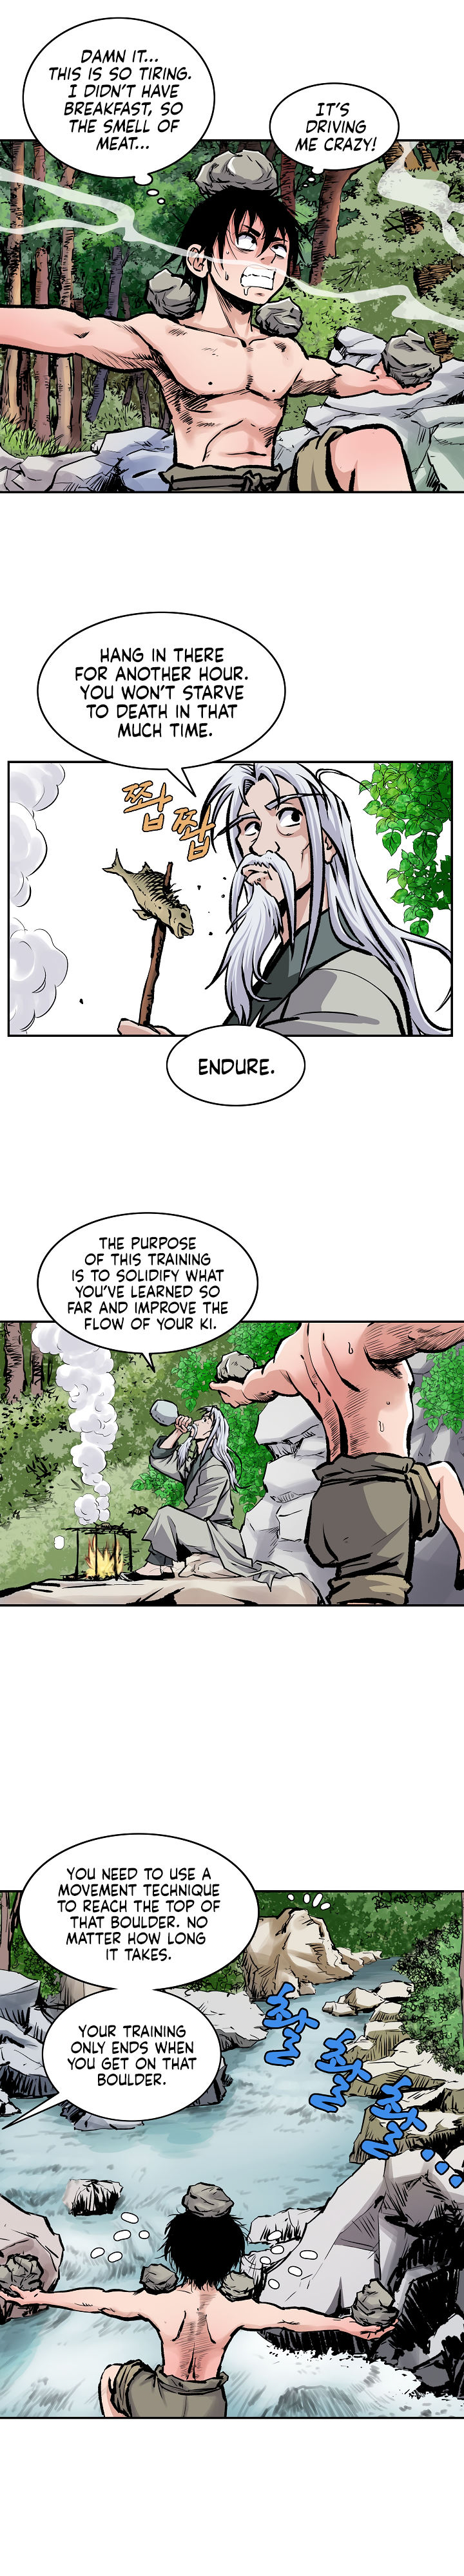 Bowblade Spirit - Chapter 3 Page 5